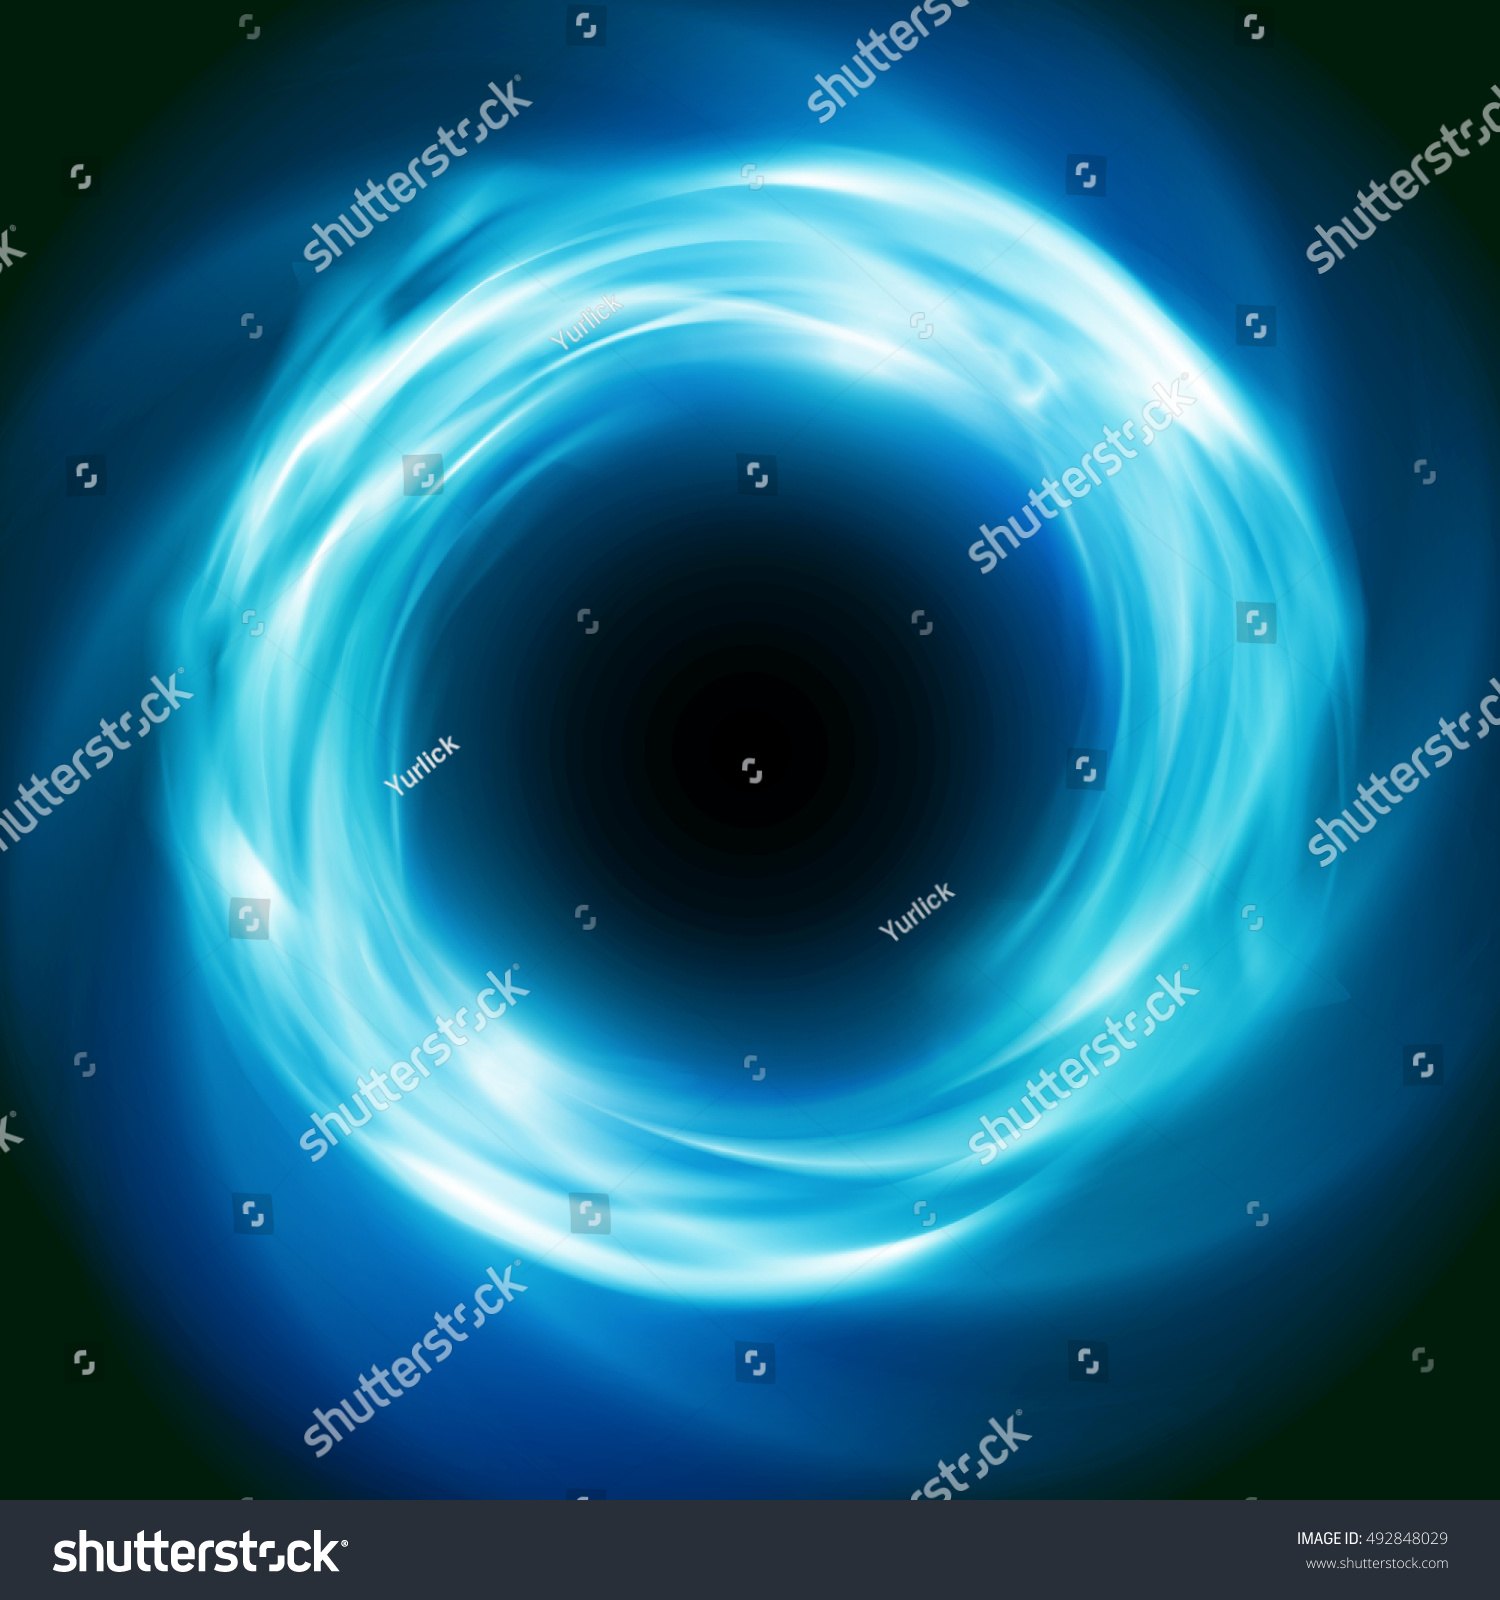 明るい宇宙の背景に青い輝く渦 超新星またはブラックホールを使った抽象的な天文学の壁紙デザイン のイラスト素材